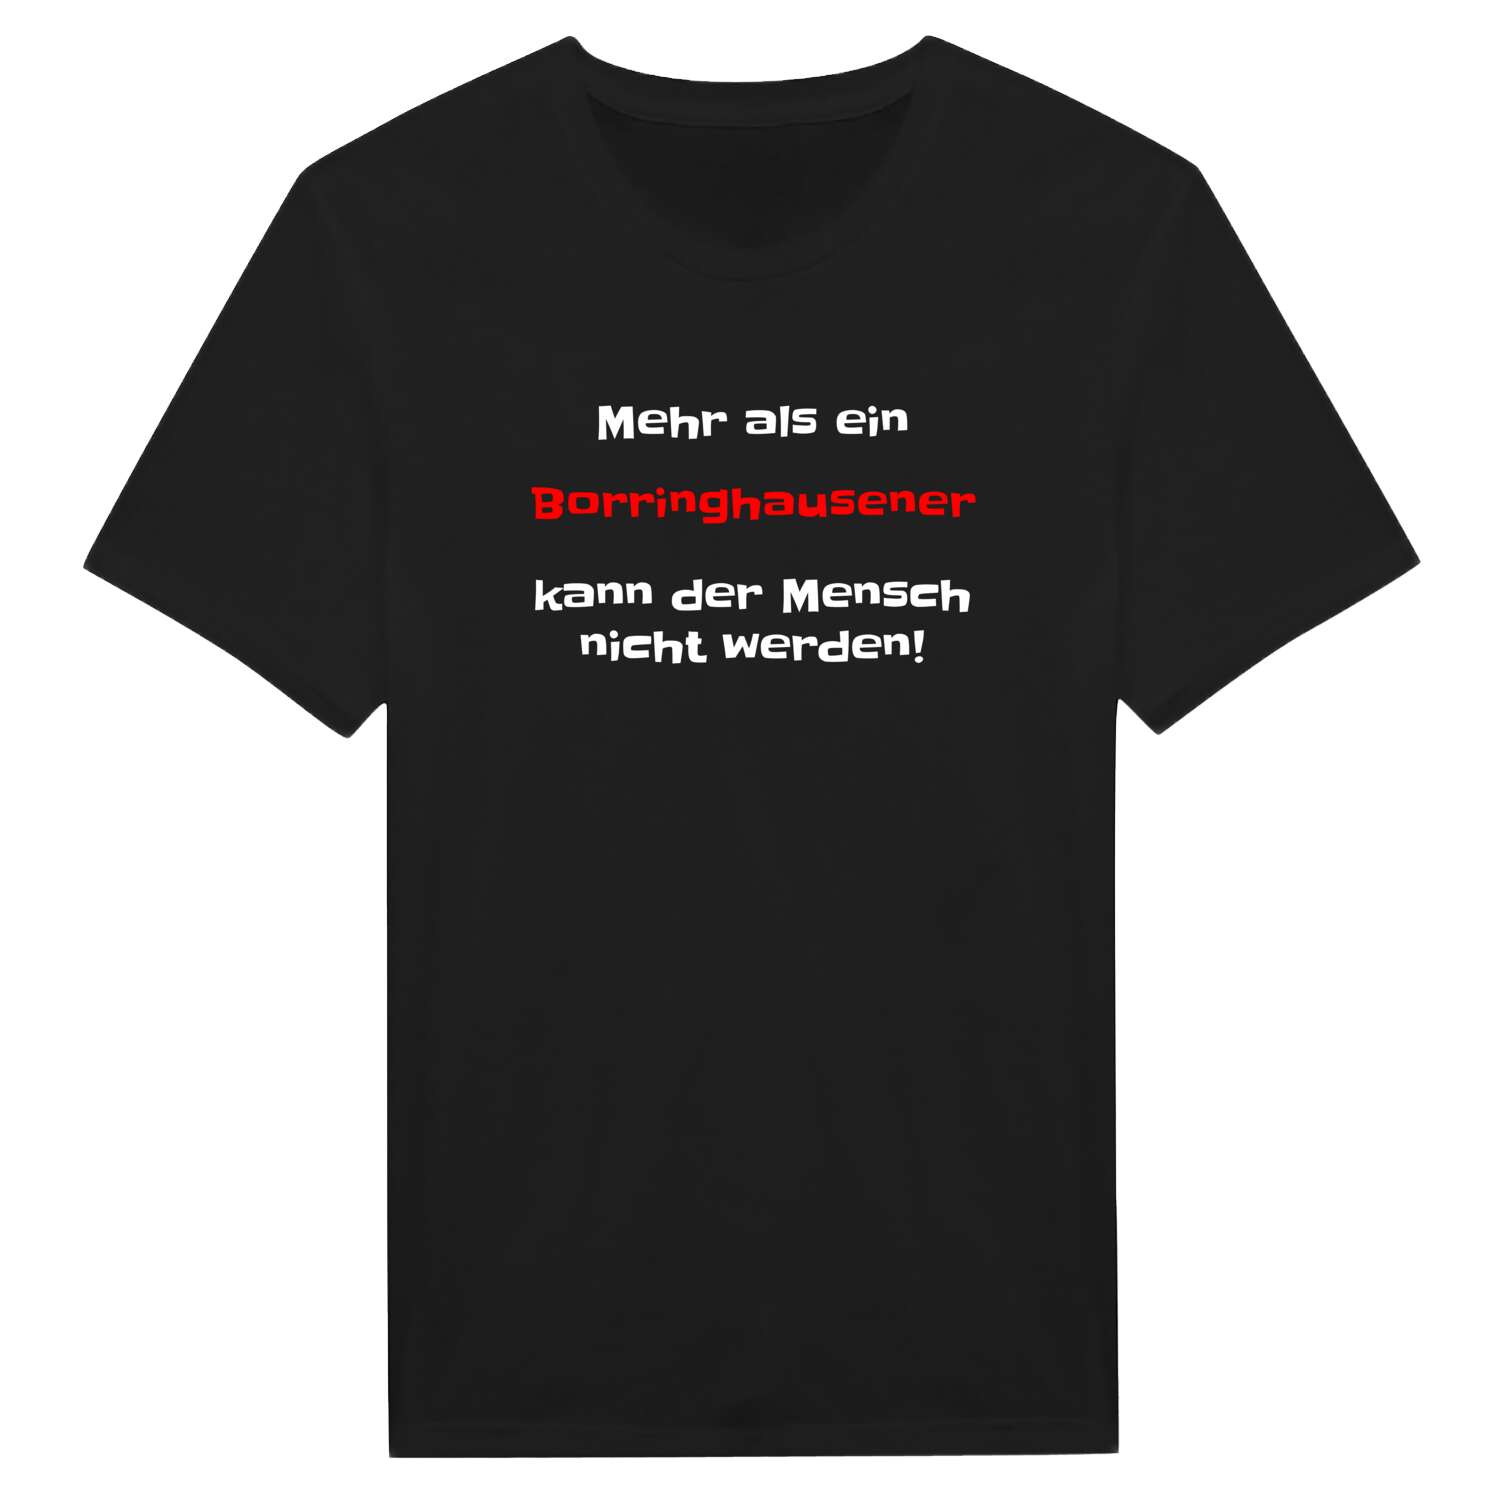 Borringhausen T-Shirt »Mehr als ein«